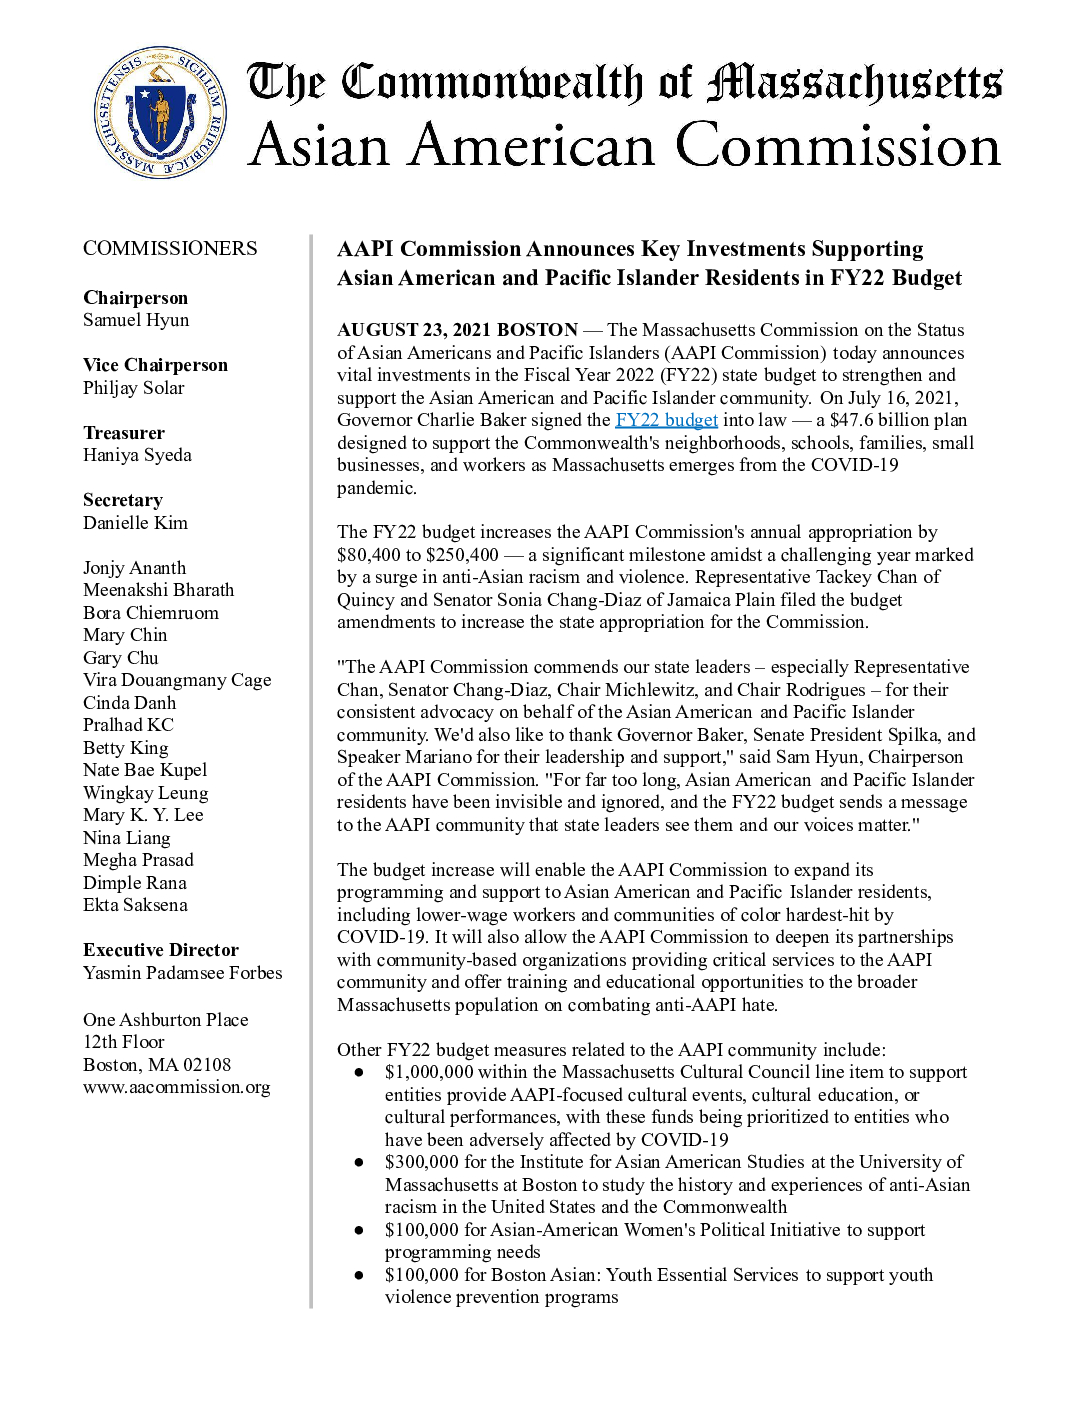 Thông cáo báo chí: Ủy ban AAPI công bố các khoản đầu tư chính hỗ trợ cư dân Mỹ gốc Á và đảo Thái Bình Dương trong ngân sách năm tài chính 22